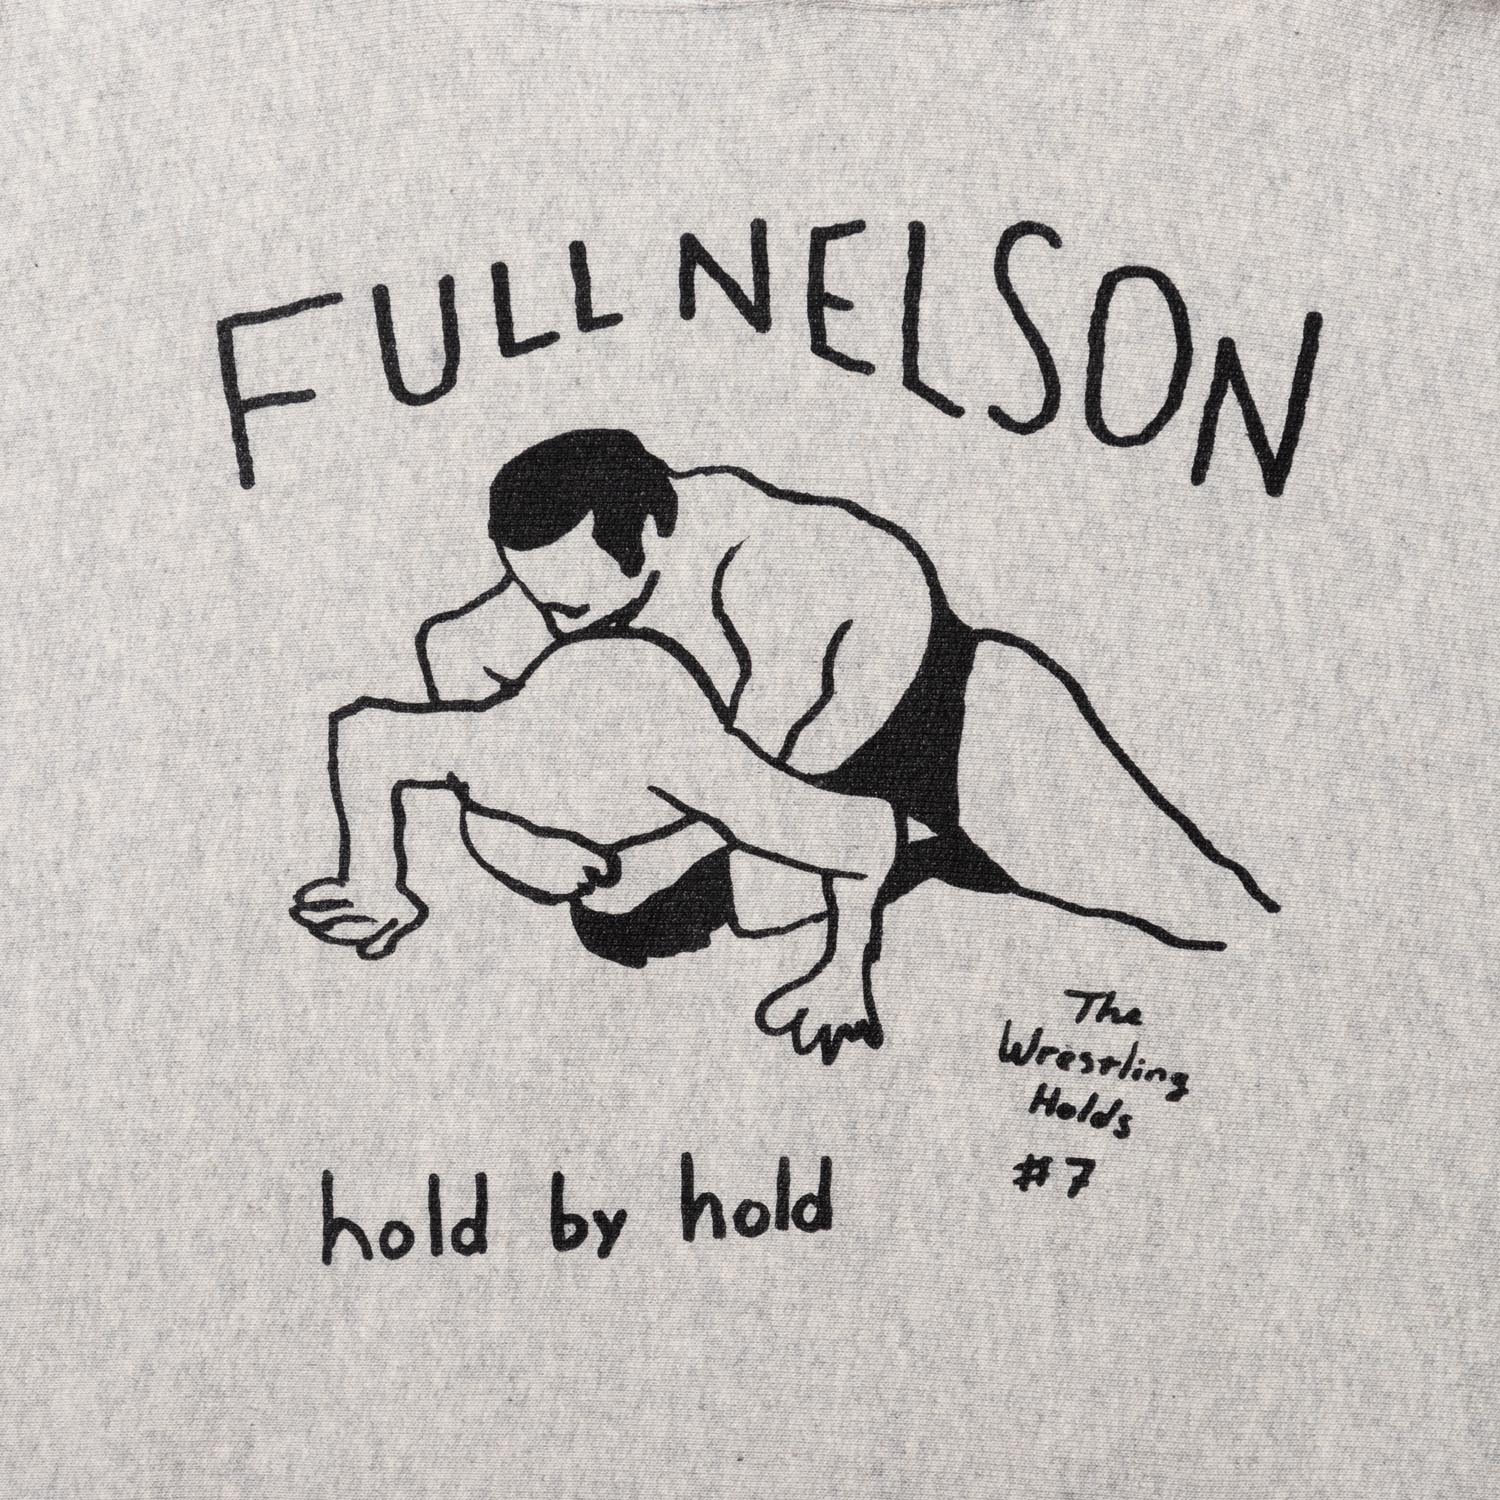 FULL NELSON HOODIE designed by Tomoo Gokita